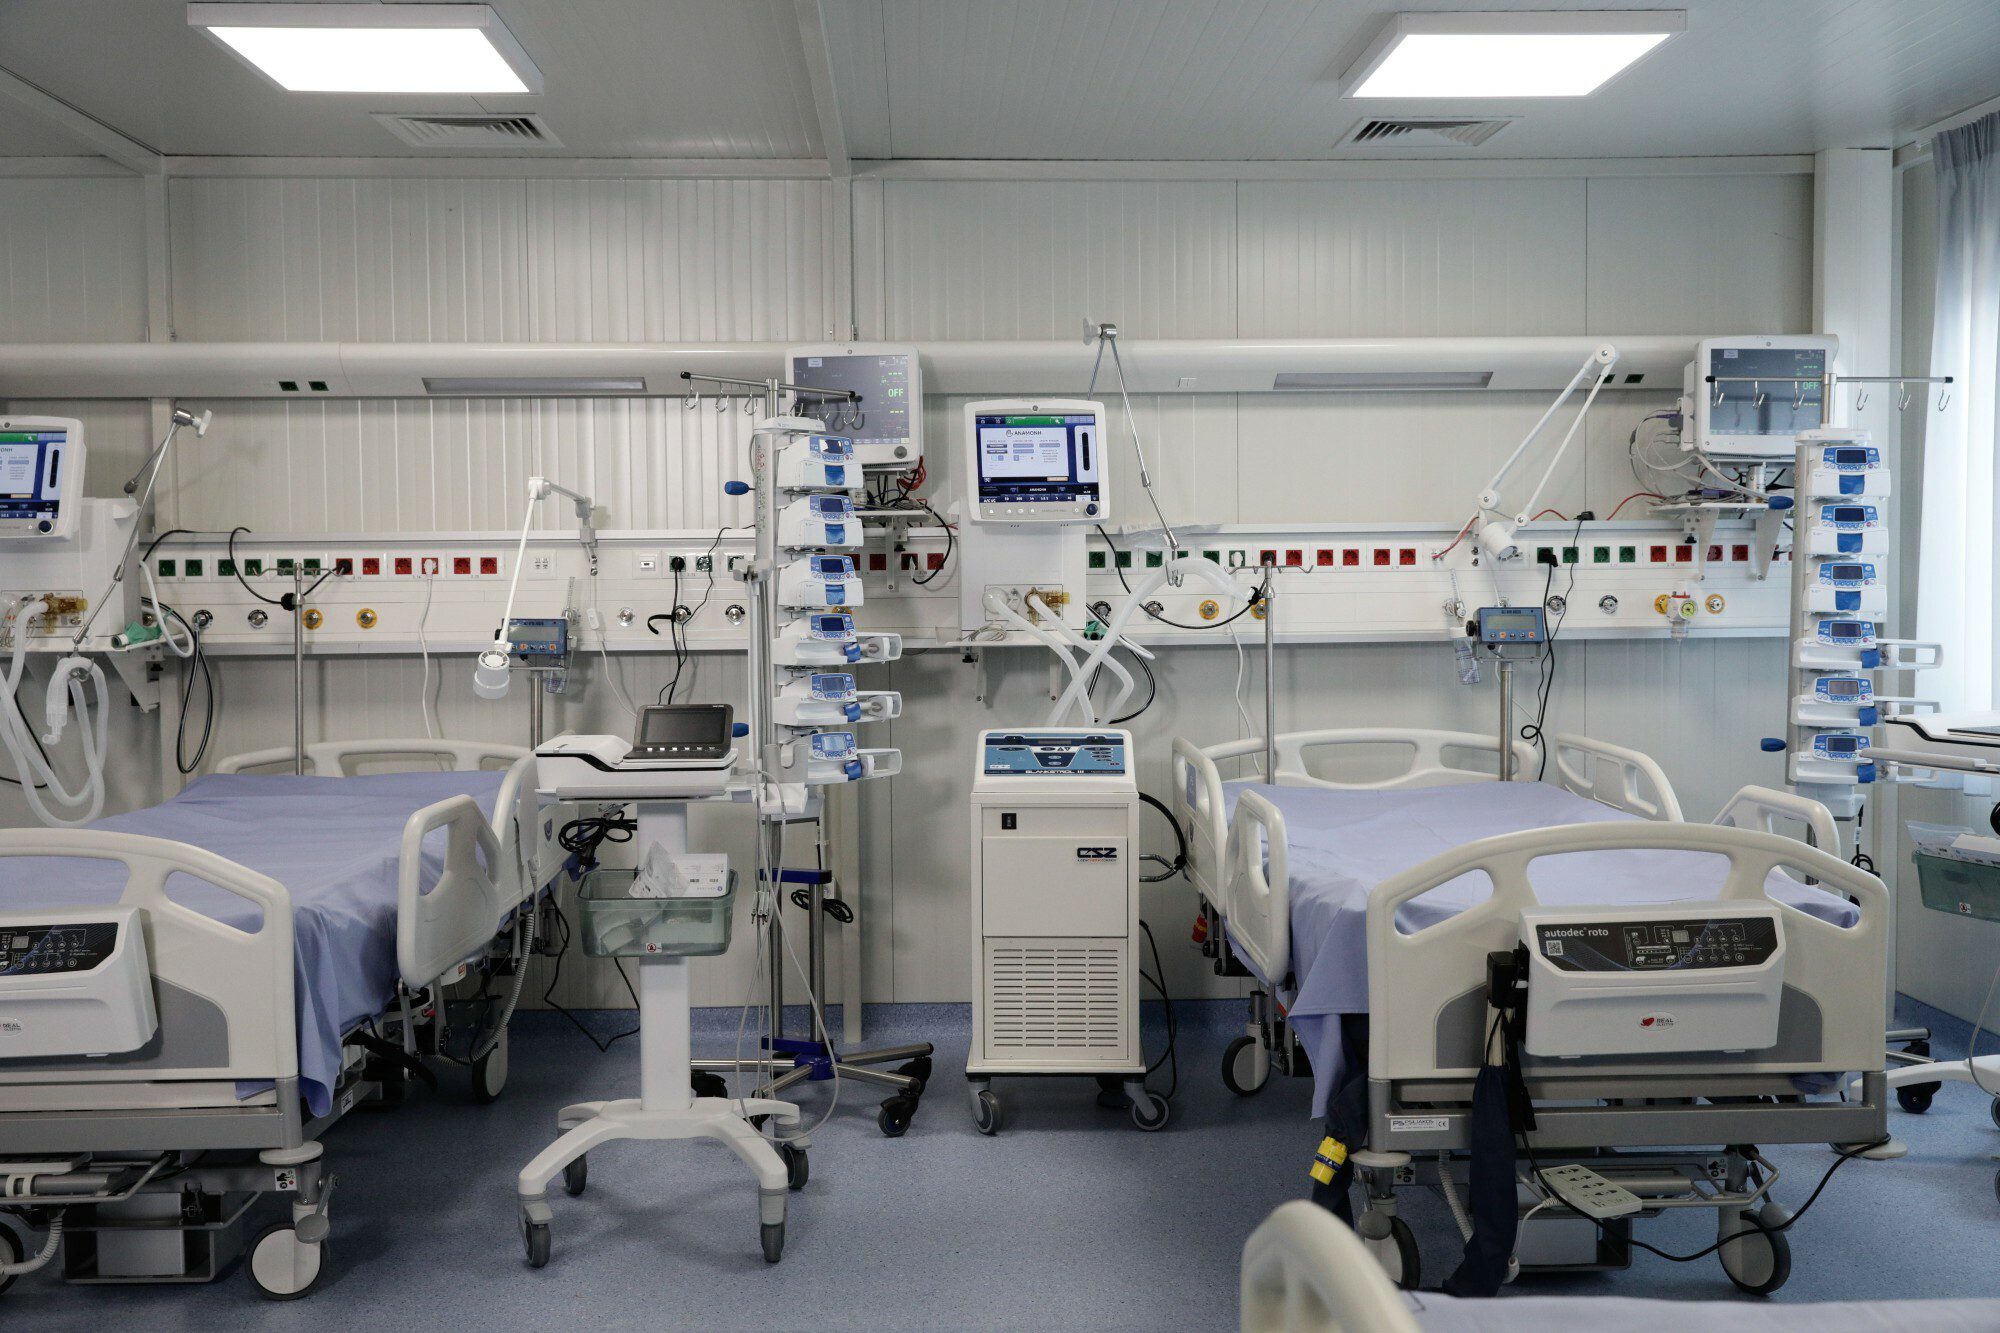 ΣΥΡΙΖΑ: Επιβεβαιώνει ο υπουργός Υγείας ότι 139 ασθενείς βρίσκονται εκτός ΜΕΘ με κίνδυνο για τη ζωή τους; – Έχουν διπλασιαστεί οι κλίνες, απαντά ο Πλεύρης